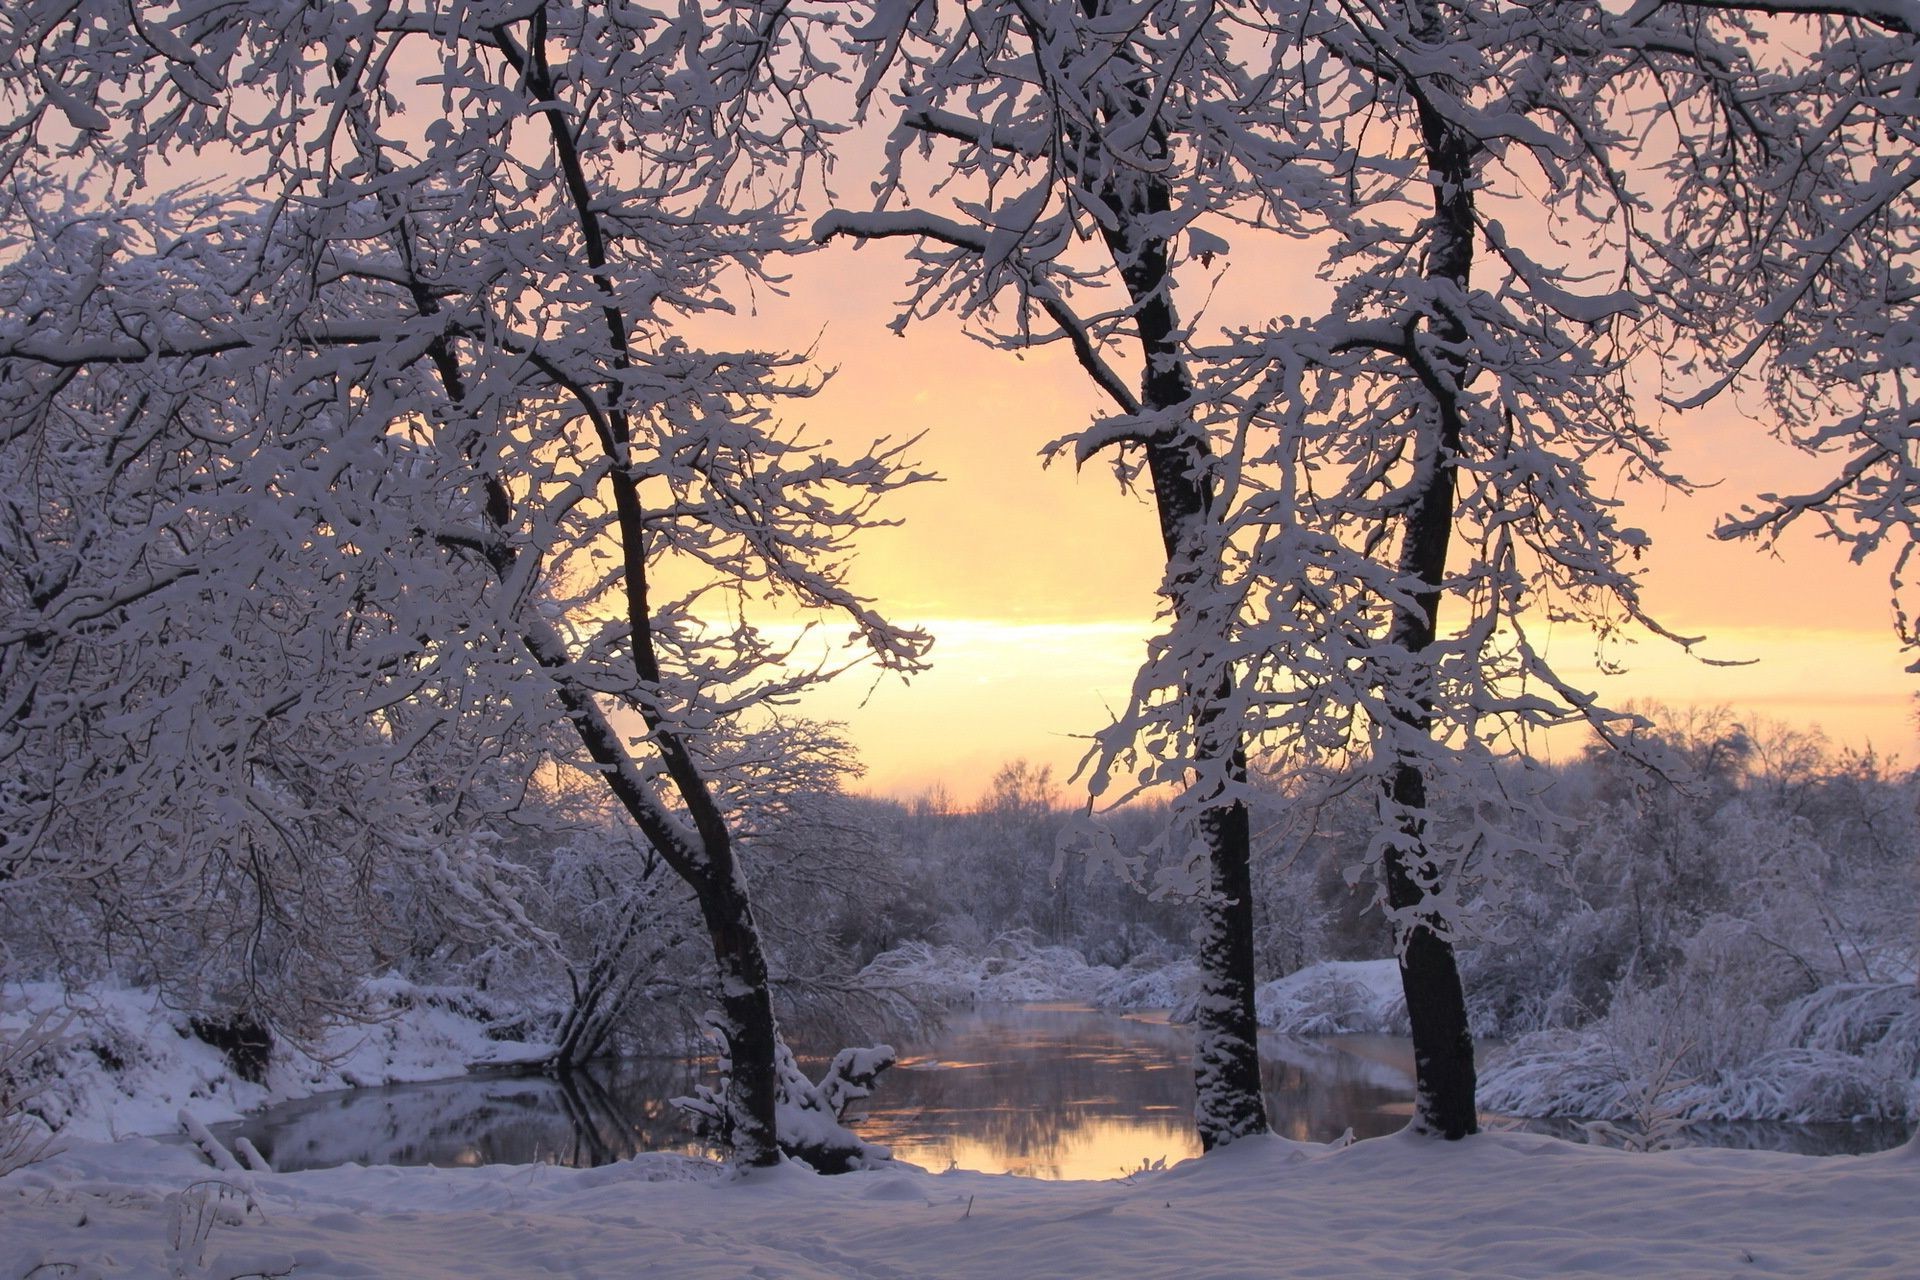 озера дерево снег зима пейзаж древесины филиал холодная живописный мороз сезон природа замороженные погода лед парк на открытом воздухе